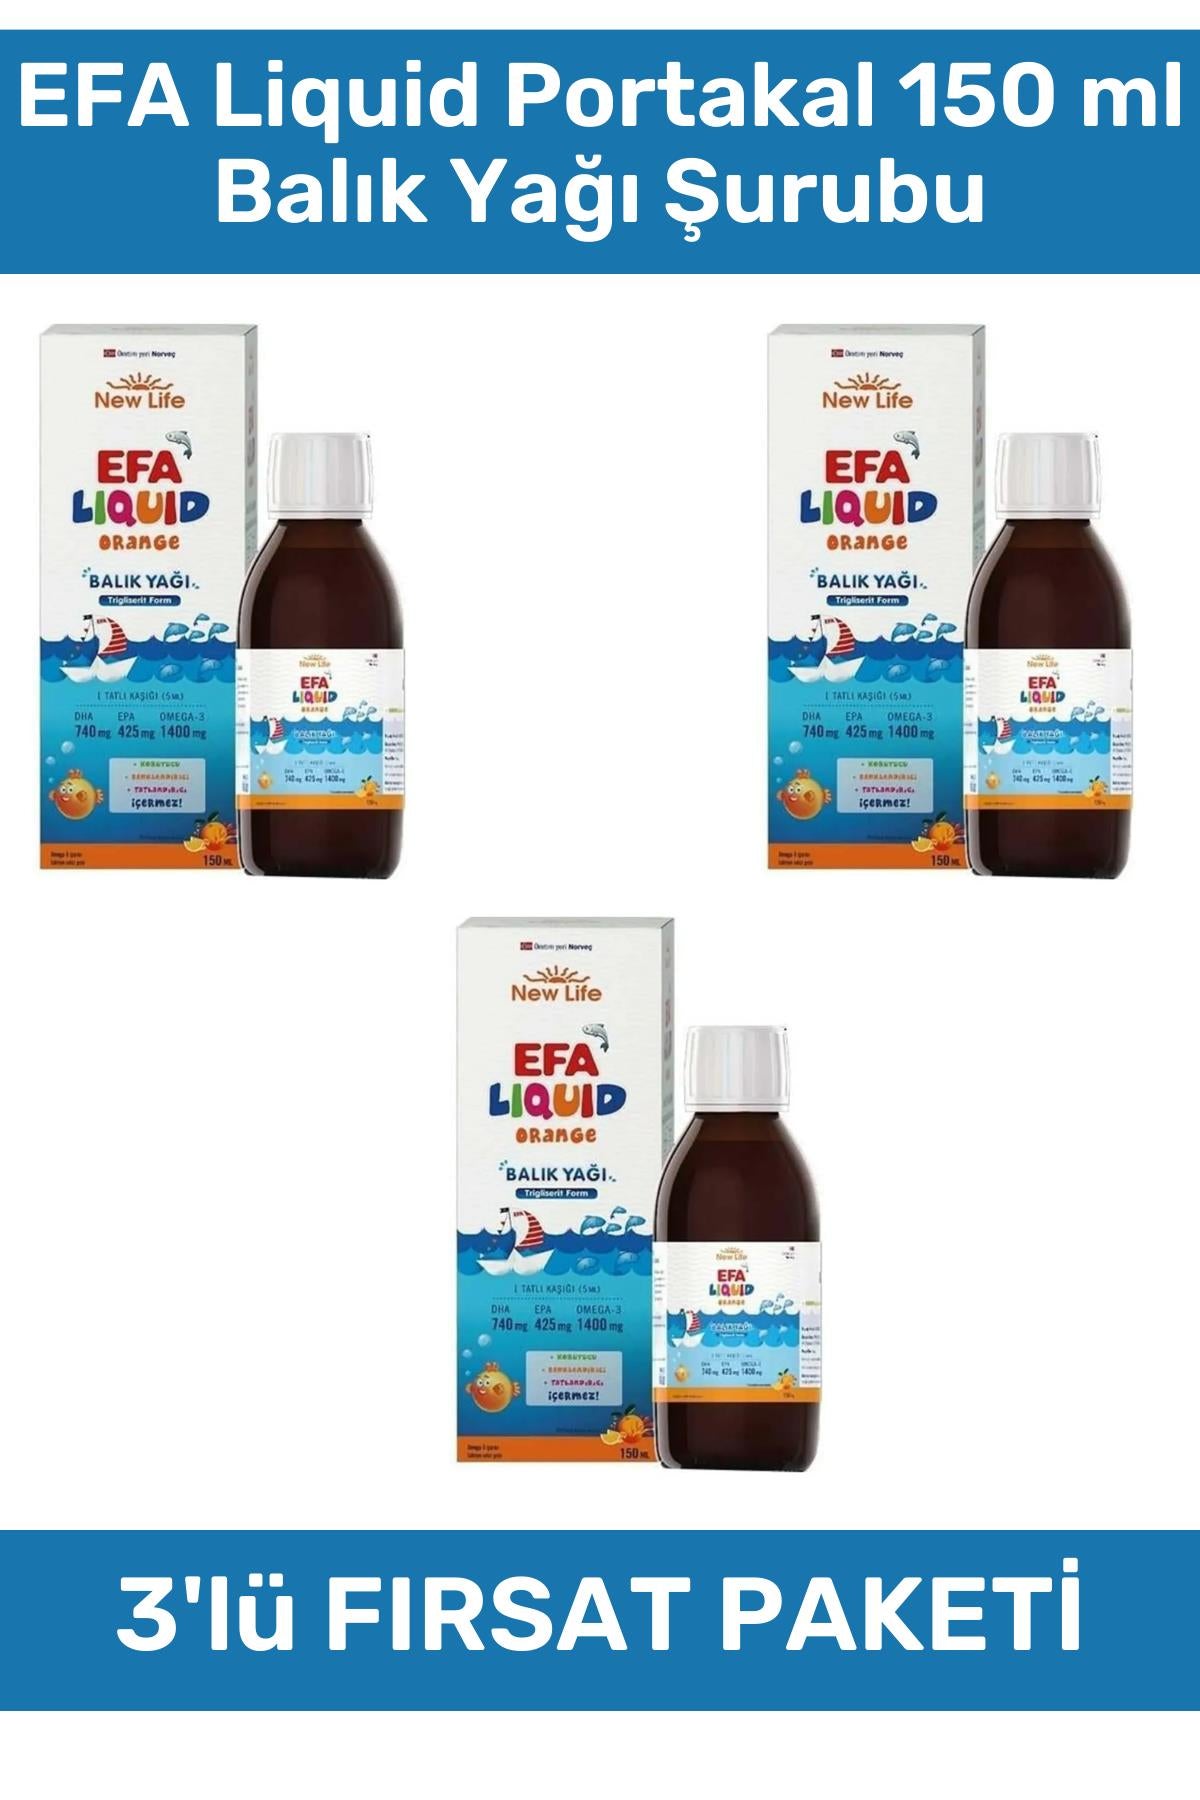 New Life EFA Liquid Portakal Balık Yağı Şurubu 150 ml 3'lü Paket